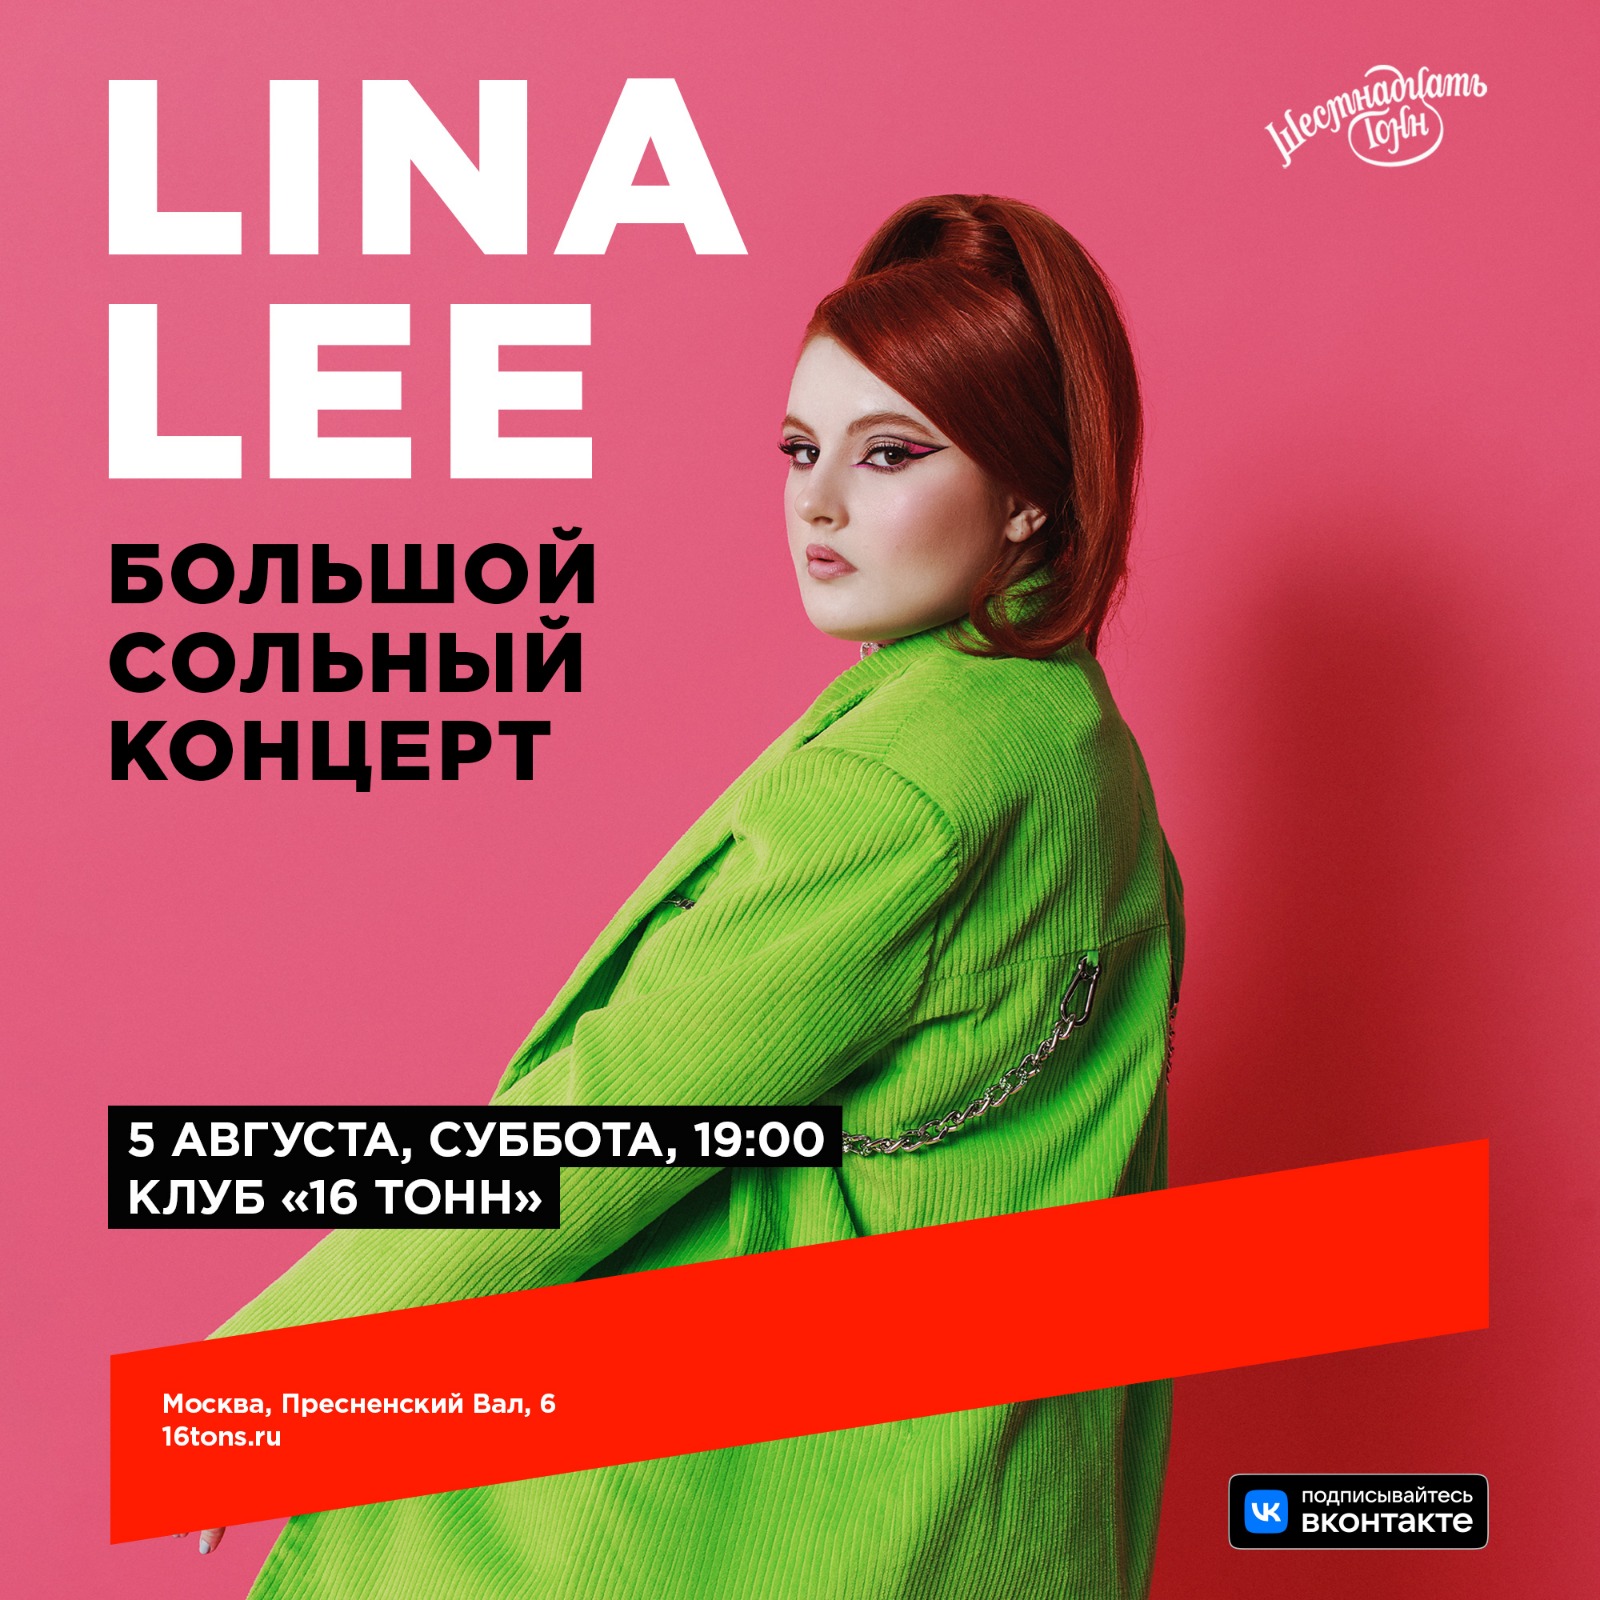 Концерт Lina Lee в пространстве «Море музыки»